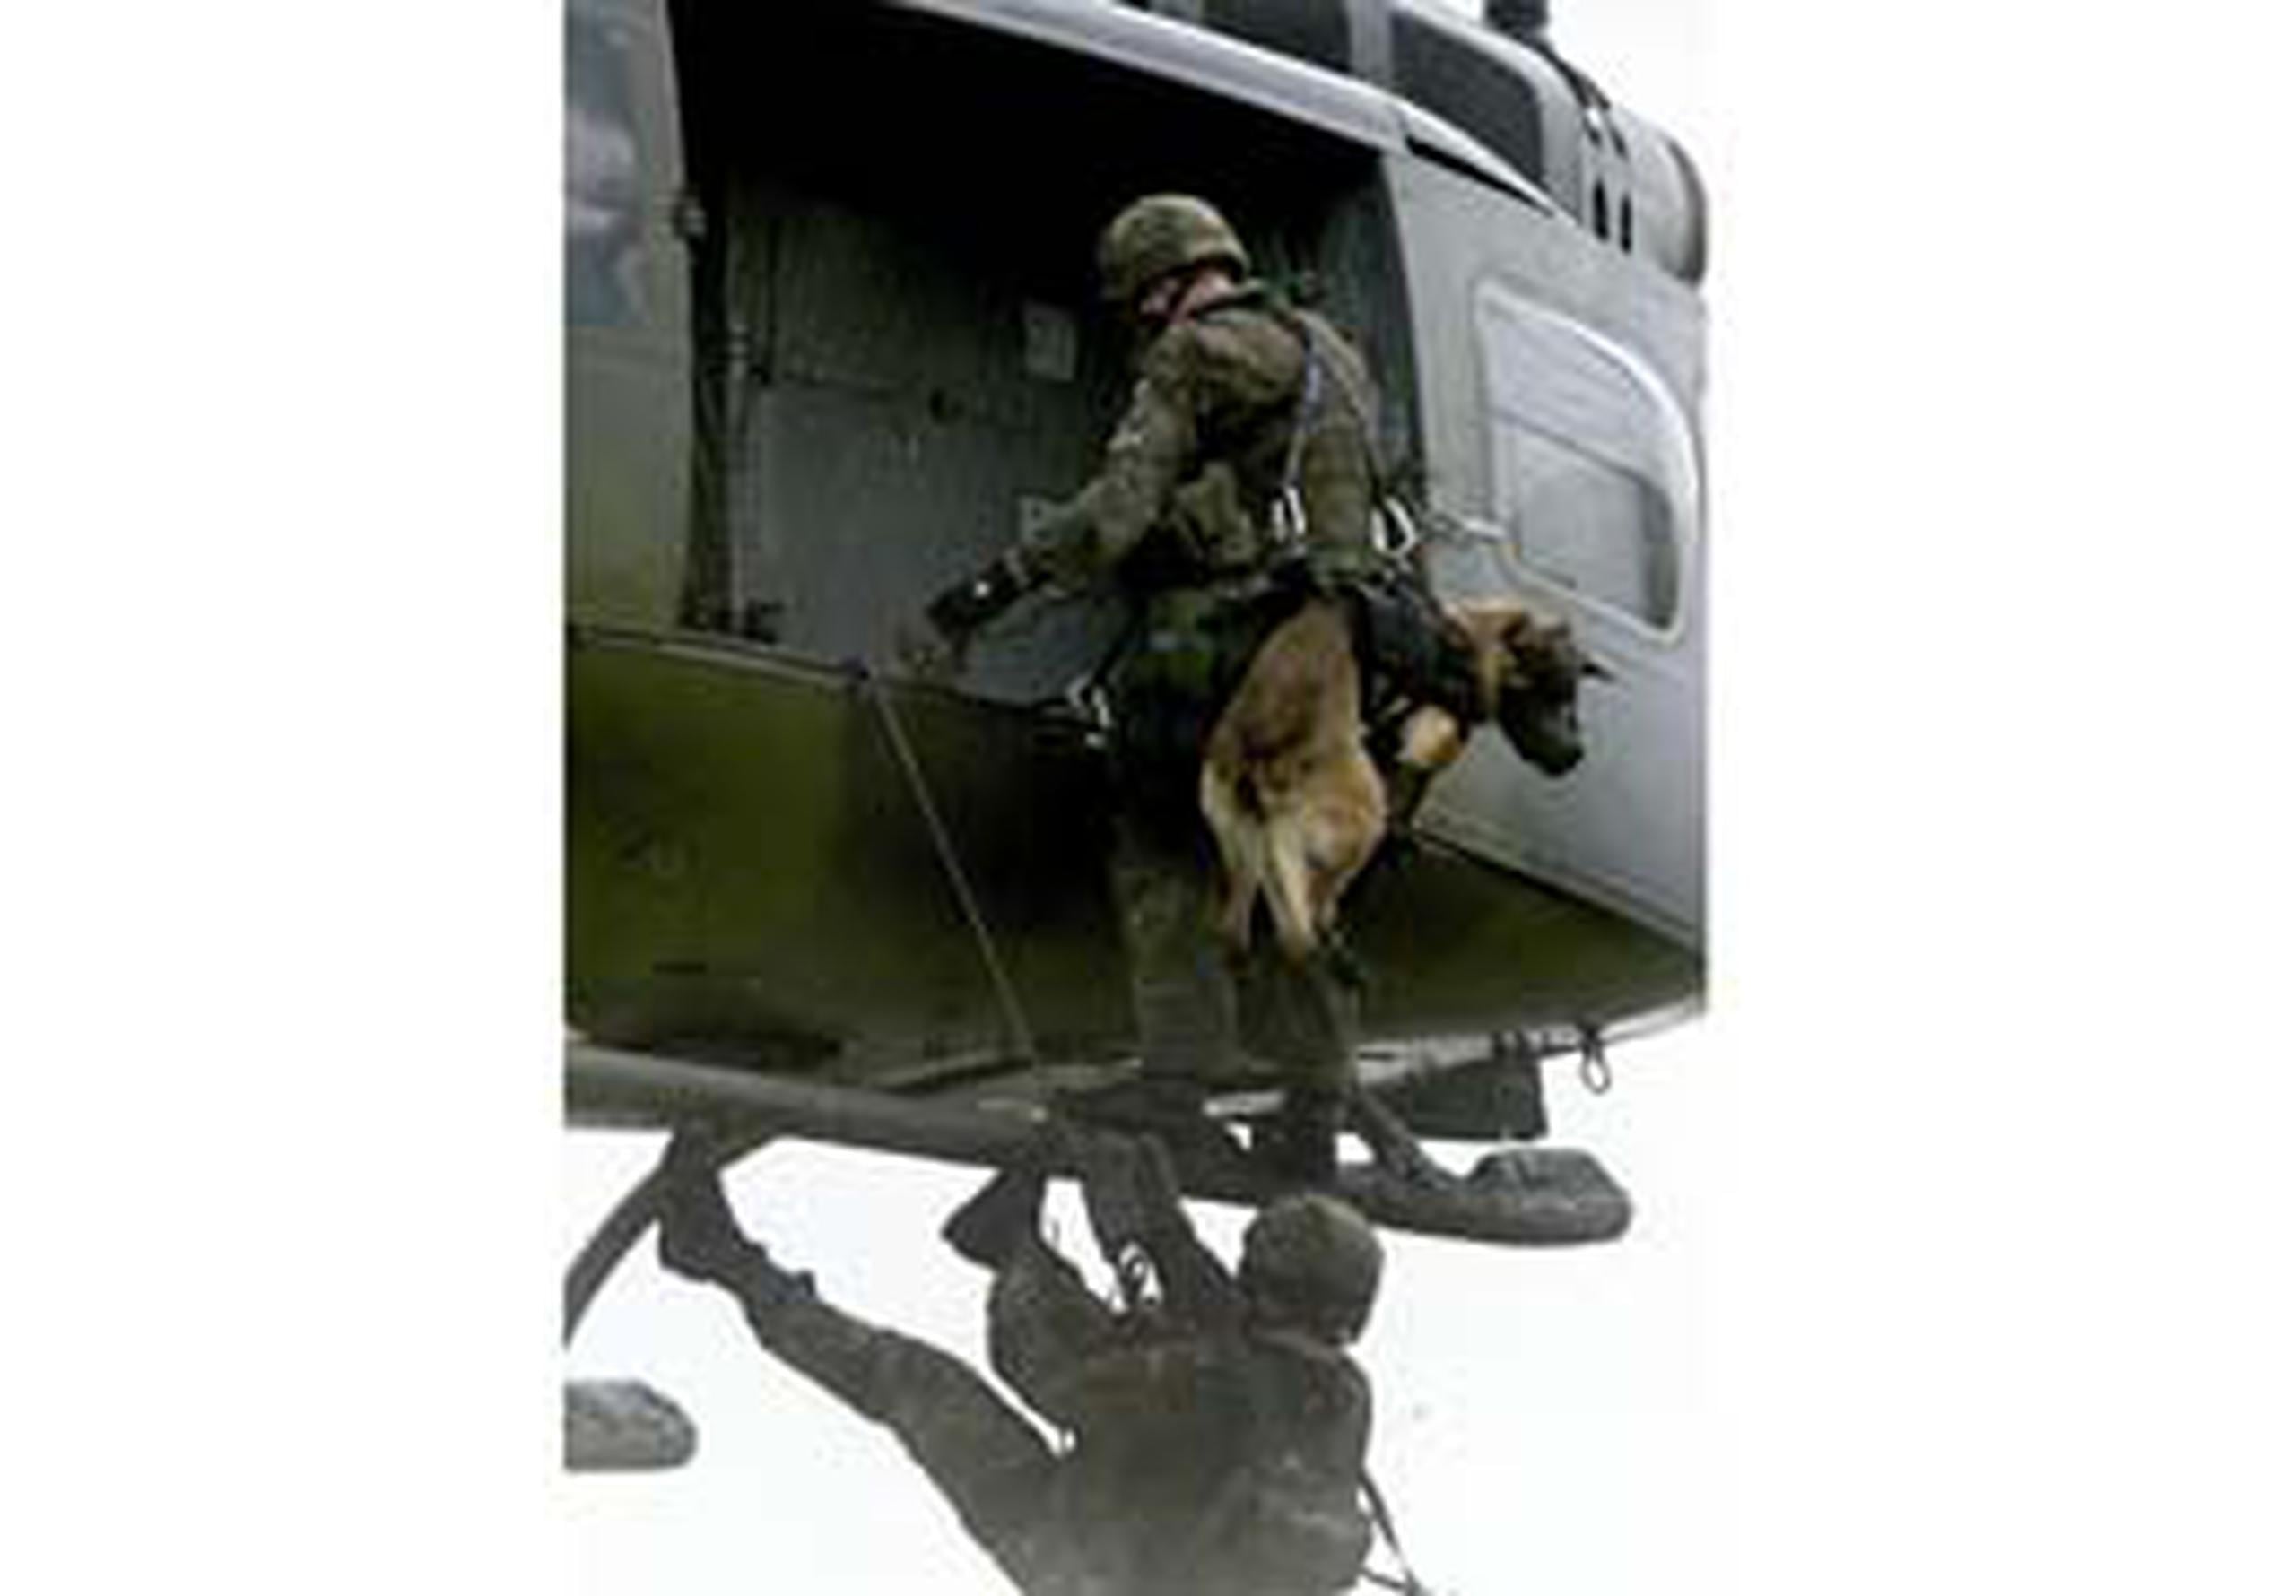 AFP Un perro elmán participa de un simulacro de operativo militar, parecido al de Osama bin Laden